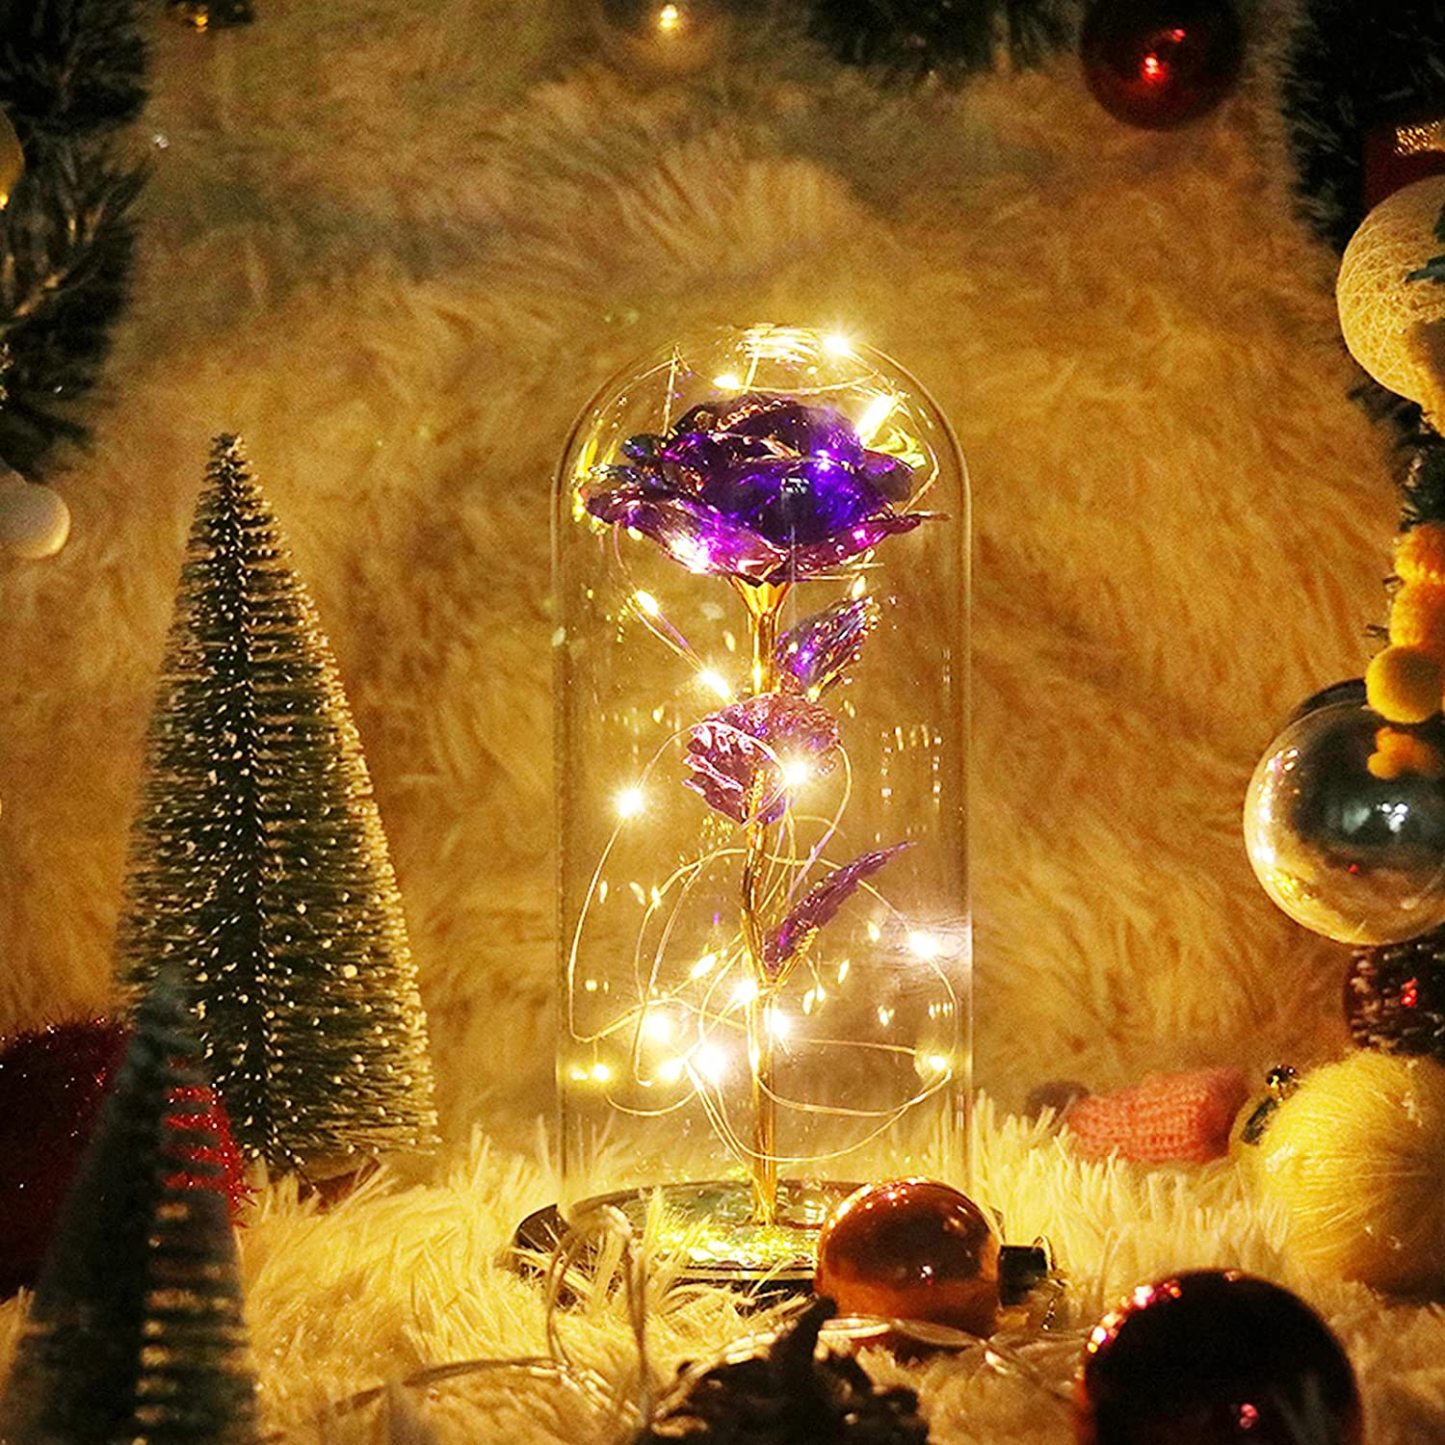 Simulazione Romantica Eternal Purple Flower Glass Cover Led Micro Landscape Regali A Natale, San Valentino E AnniversarioLampada Personalizzata